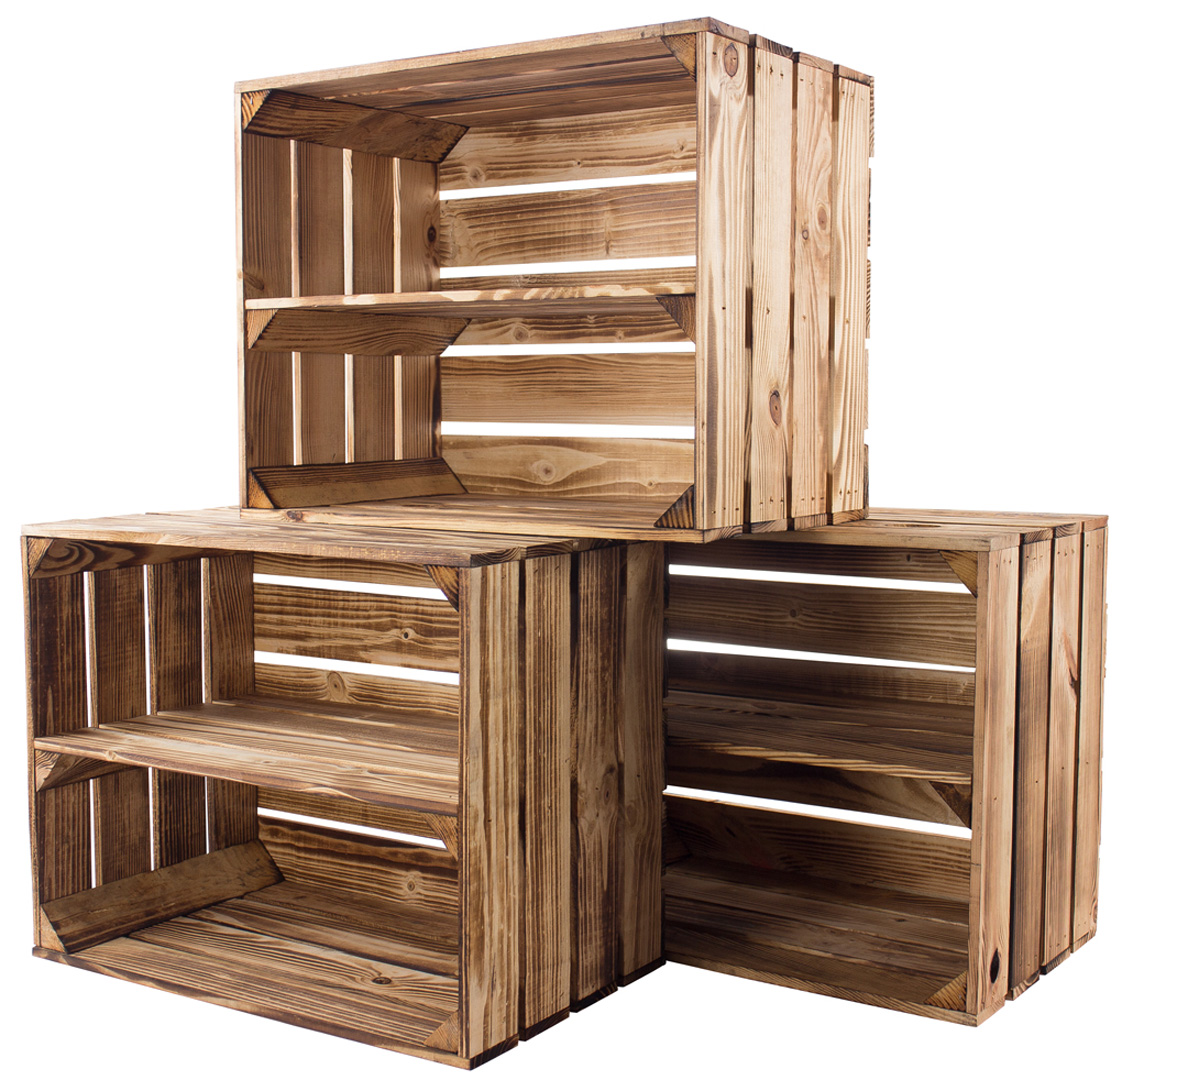 paars Ontkennen Notitie Houten kistje kopen? Online het grootste assortiment houten kistjes | De  Kisten Koning